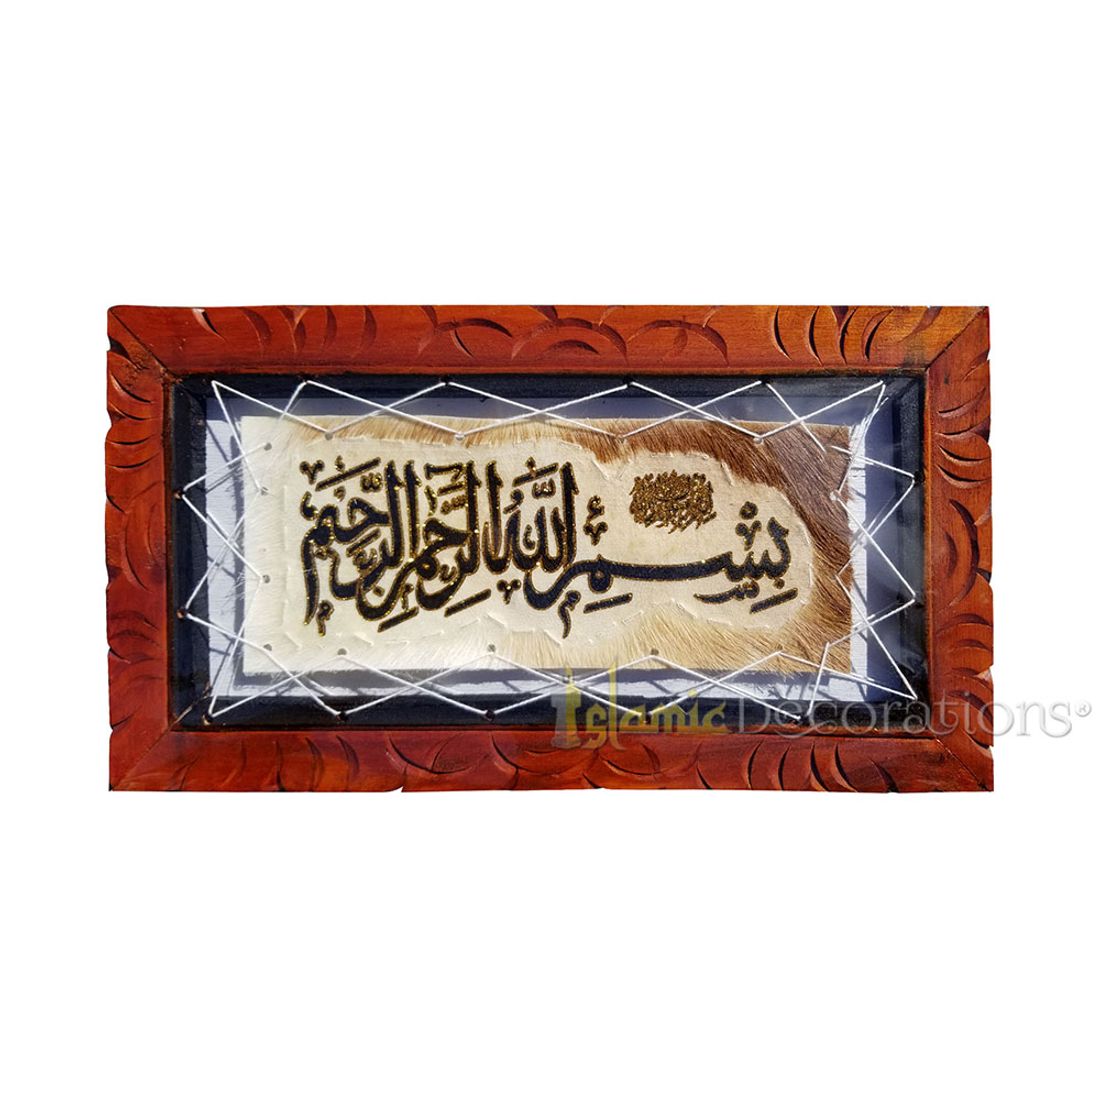 Kecil Basmallah Kambing Menyembunyikan Hiasan Dinding Arab Kaligrafi Islam Persegi Panjang 8.25x15 inci